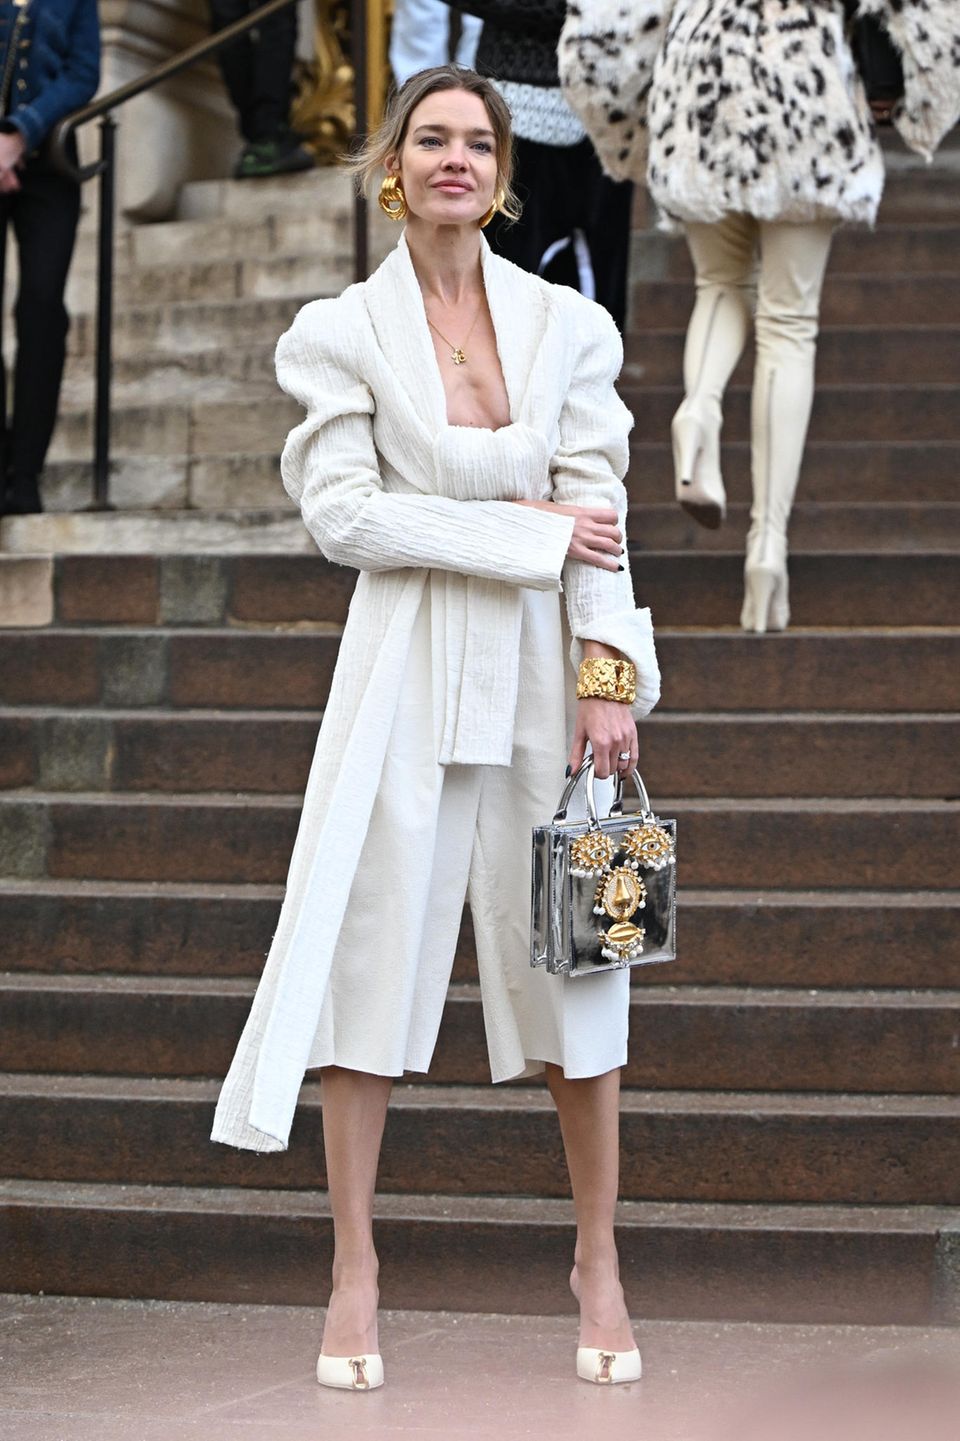 Ärmel hochgekrempelt – jetzt wird hohe Fashionkunst gezeigt. Natalia Vodianova setzt zur tief ausgeschnittenen Creme-Bluse auf Midi-Culotte, auffälligen Schmuck und silberne Gesichtstasche. Elegant!